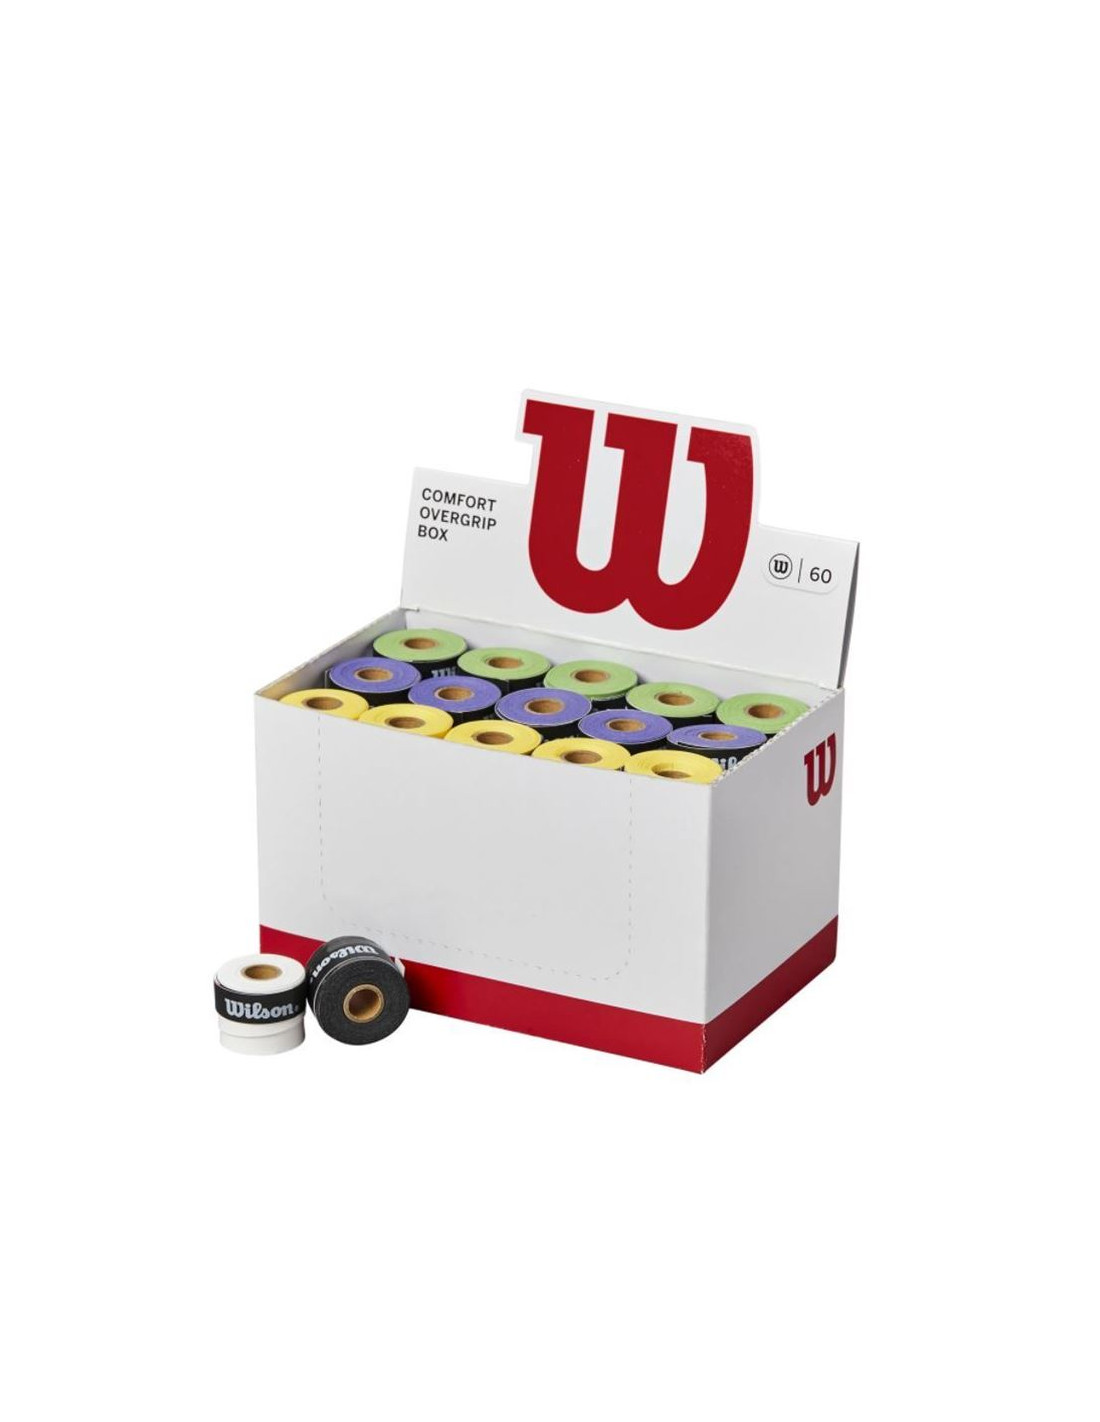 Surgrips de tennis Wilson Ultra Pack 60